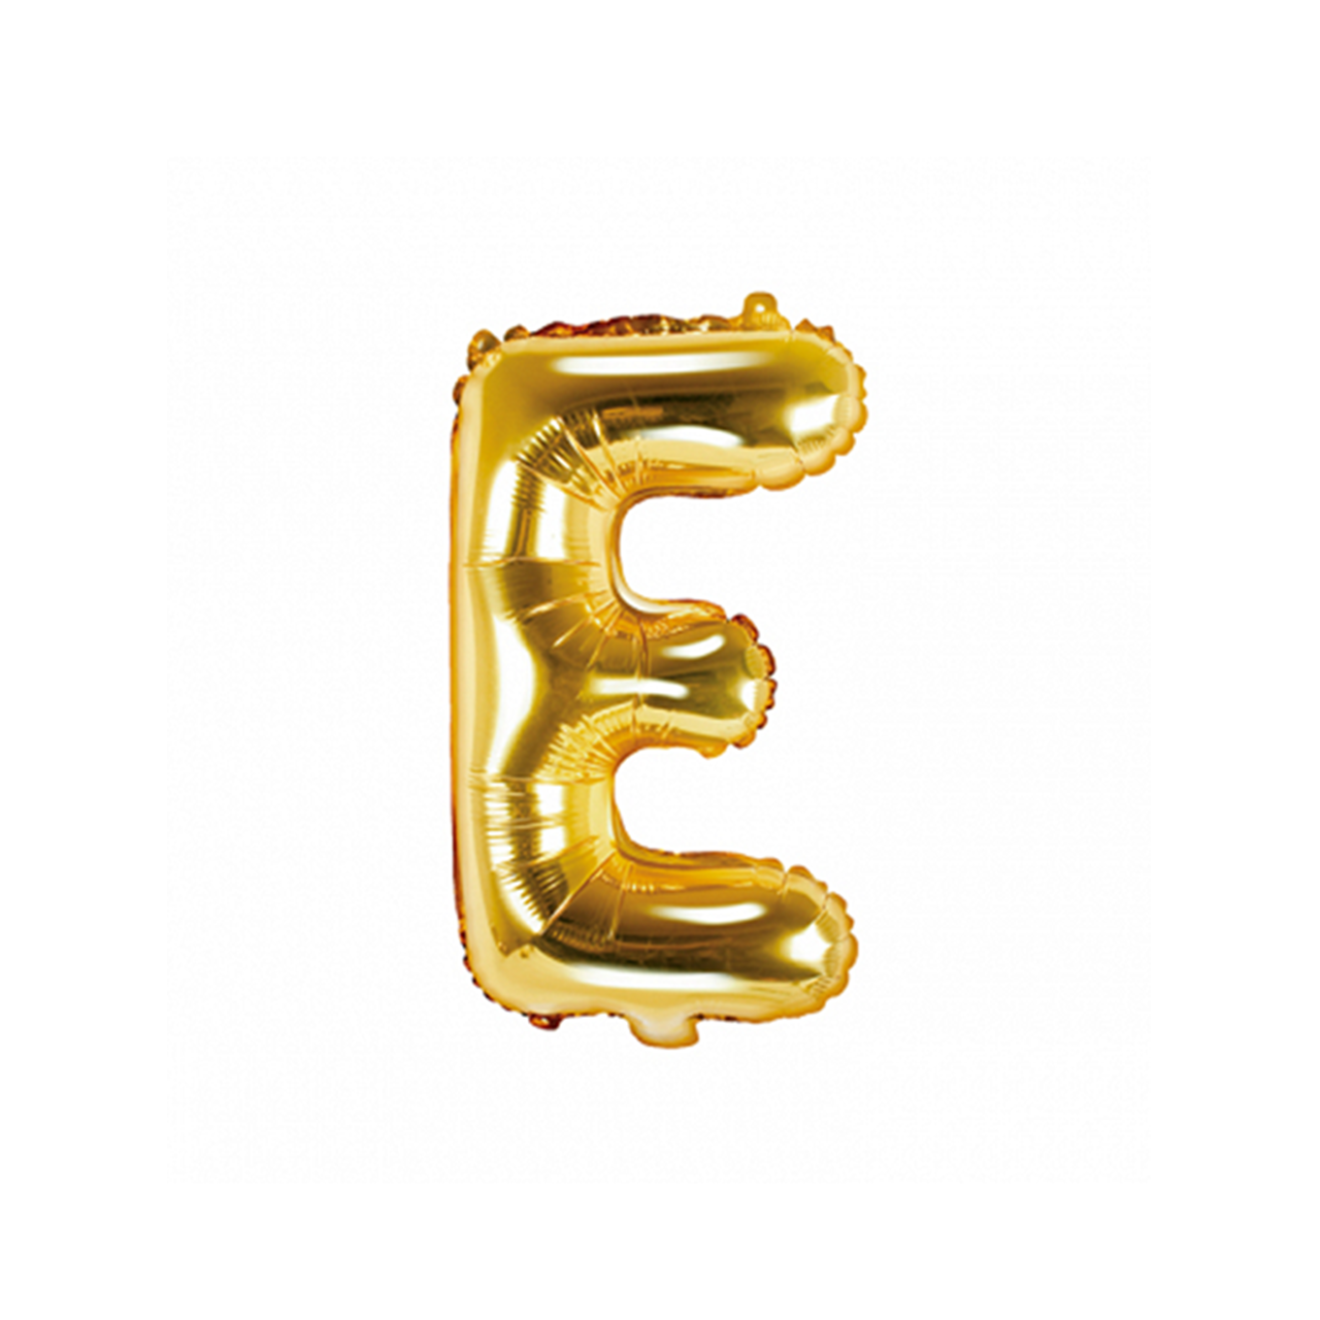 1 Ballon XS - Buchstabe E - Gold